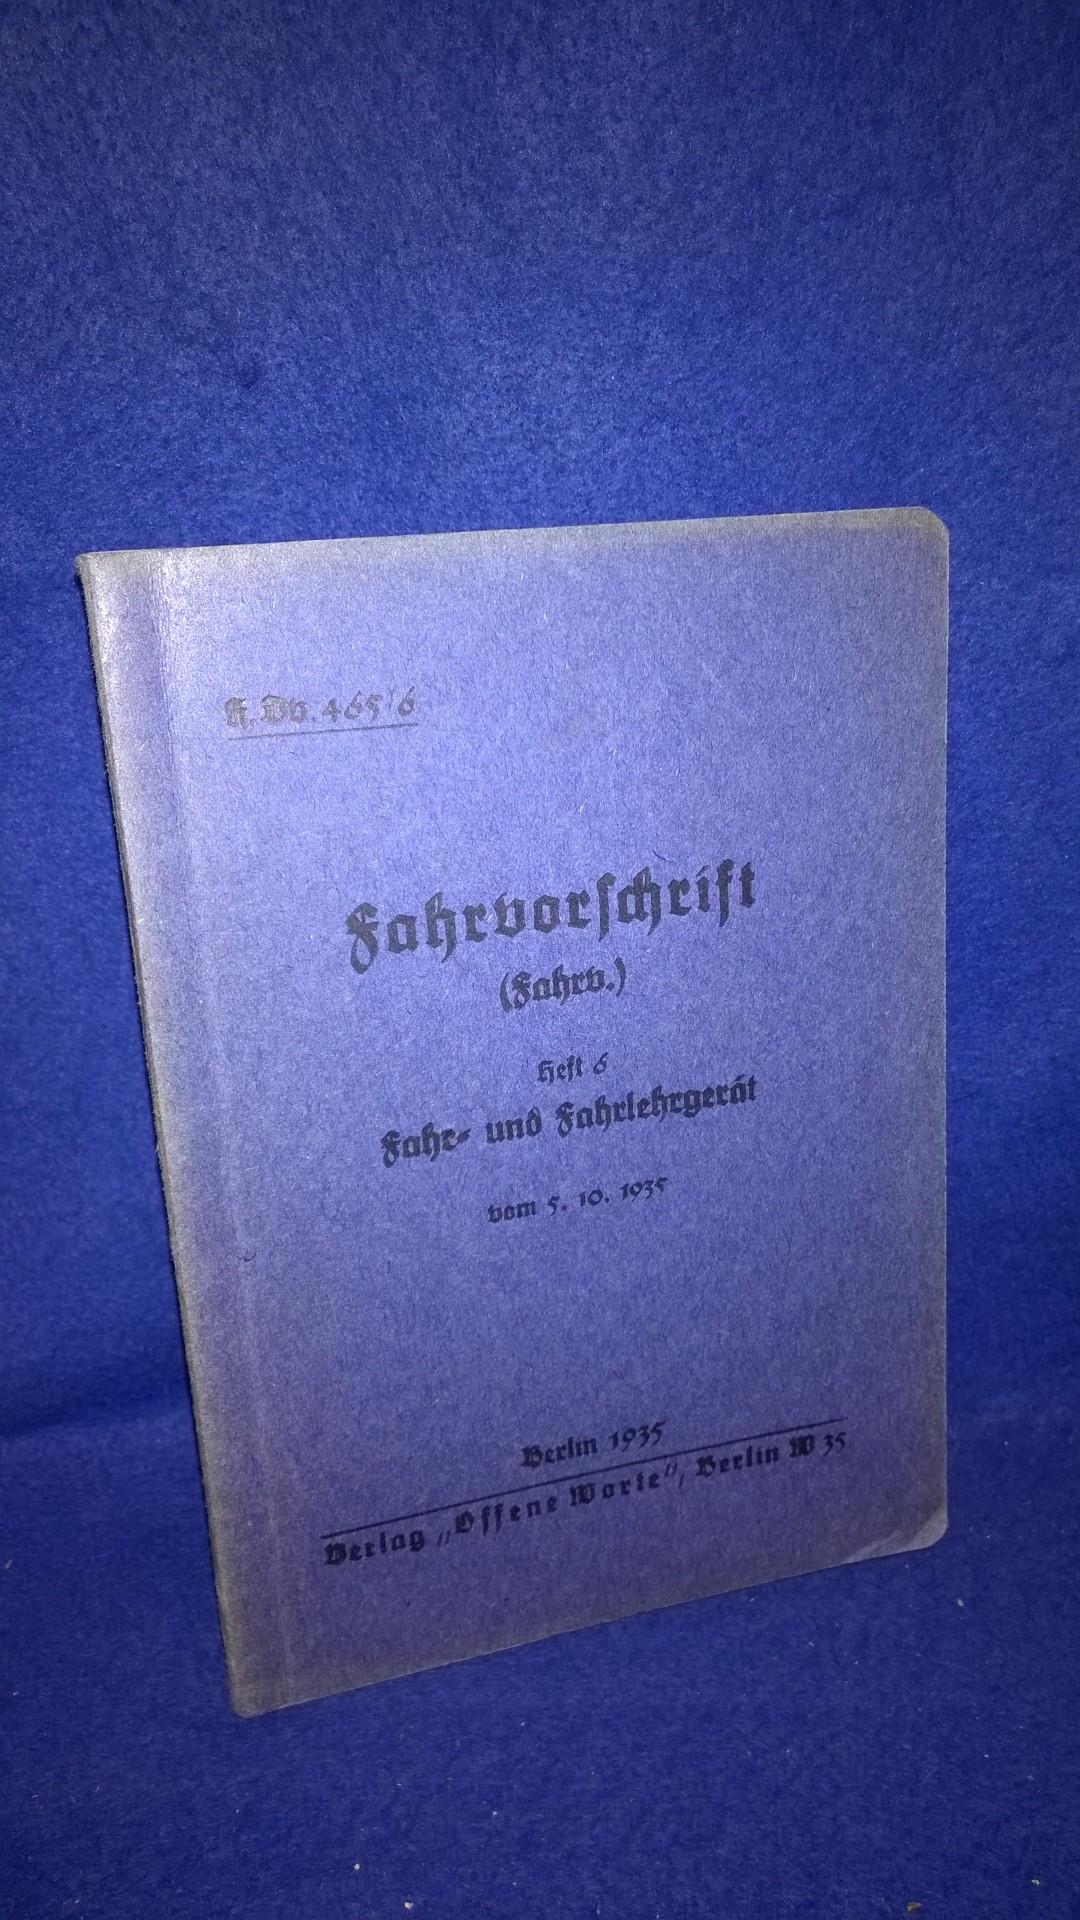 H.Dv.465/6 Fahrvorschrift. Heft 6: Fahr-und Fahrlehrgerät vom 5.10.1935. Selten!